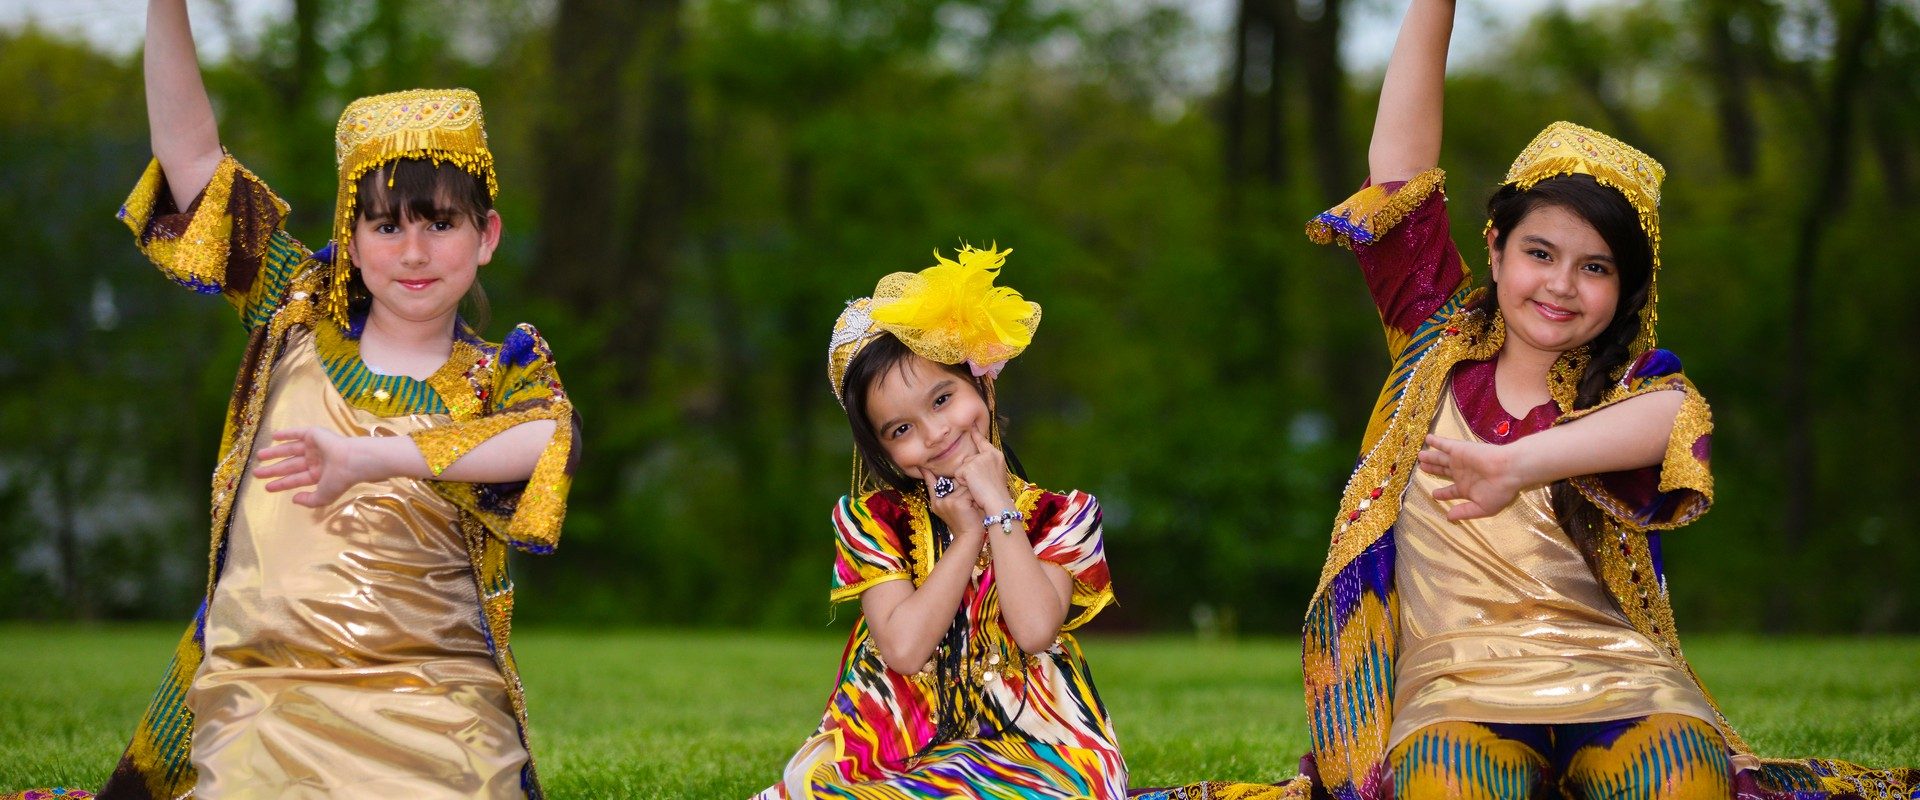 Uzbek musiqa. Болалар Миллий. Дети и Навруз в Узбекистане. Дети в национальных костюмах. Узбекская Национальная одежда для детей.